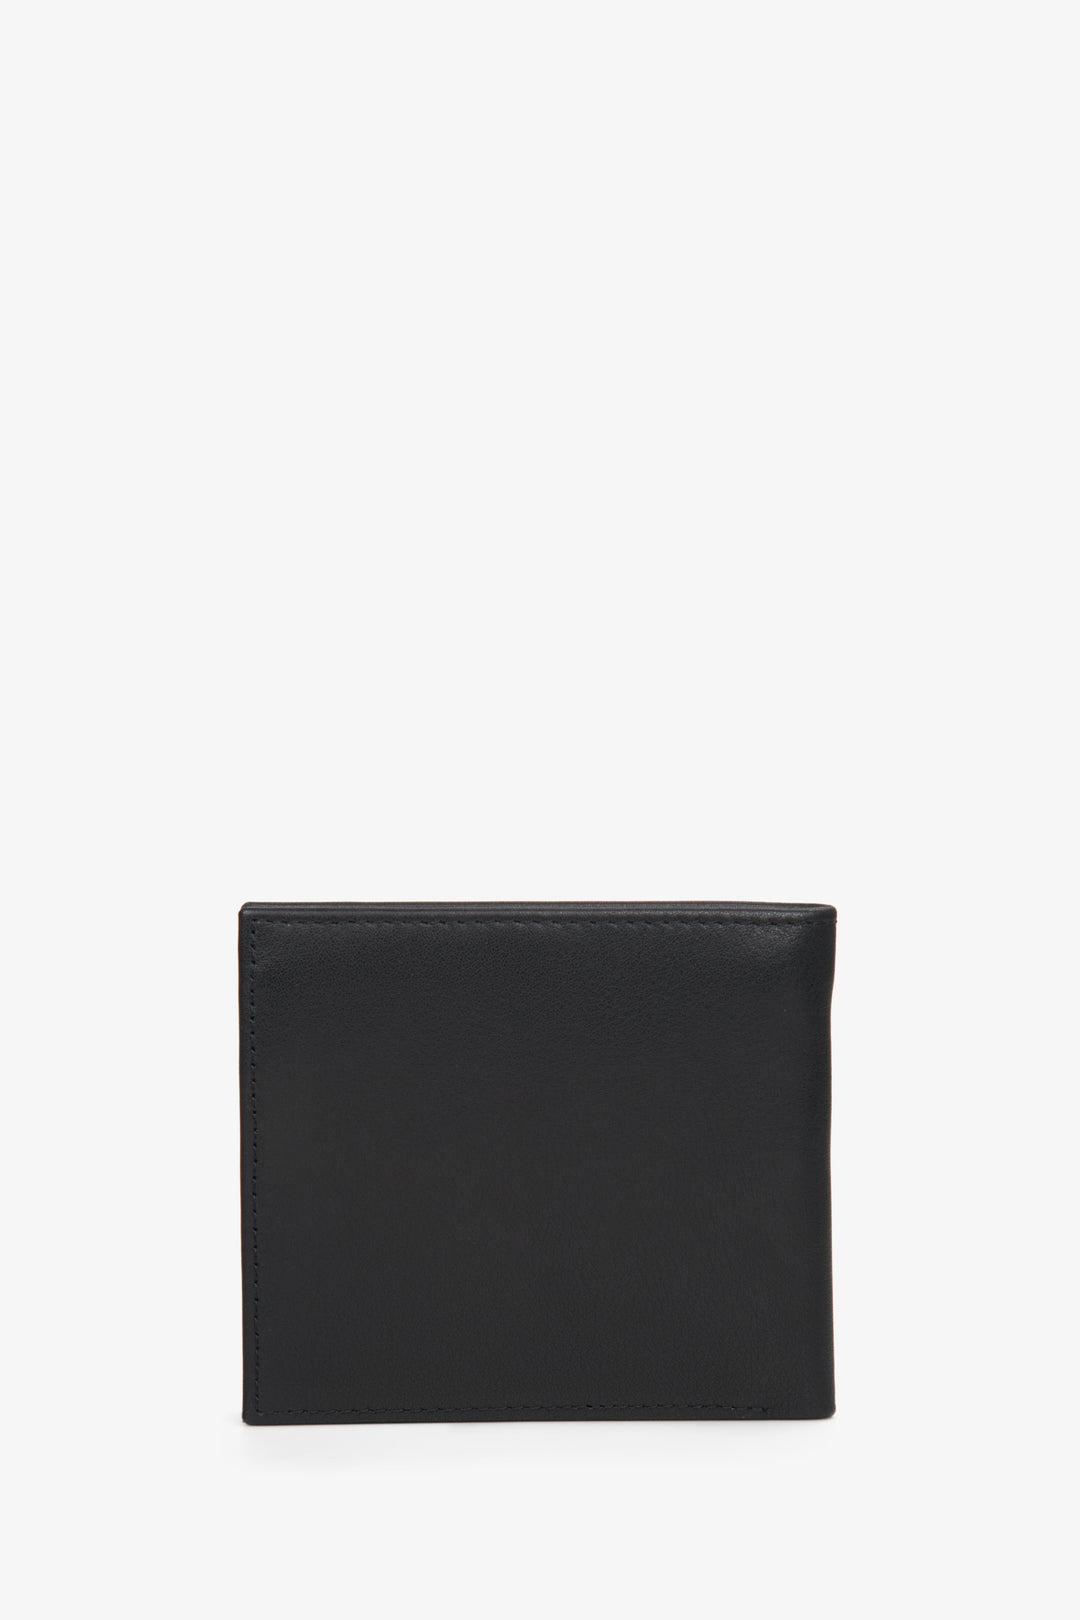 Men's bi-fold wallet handy black leather by ES8.